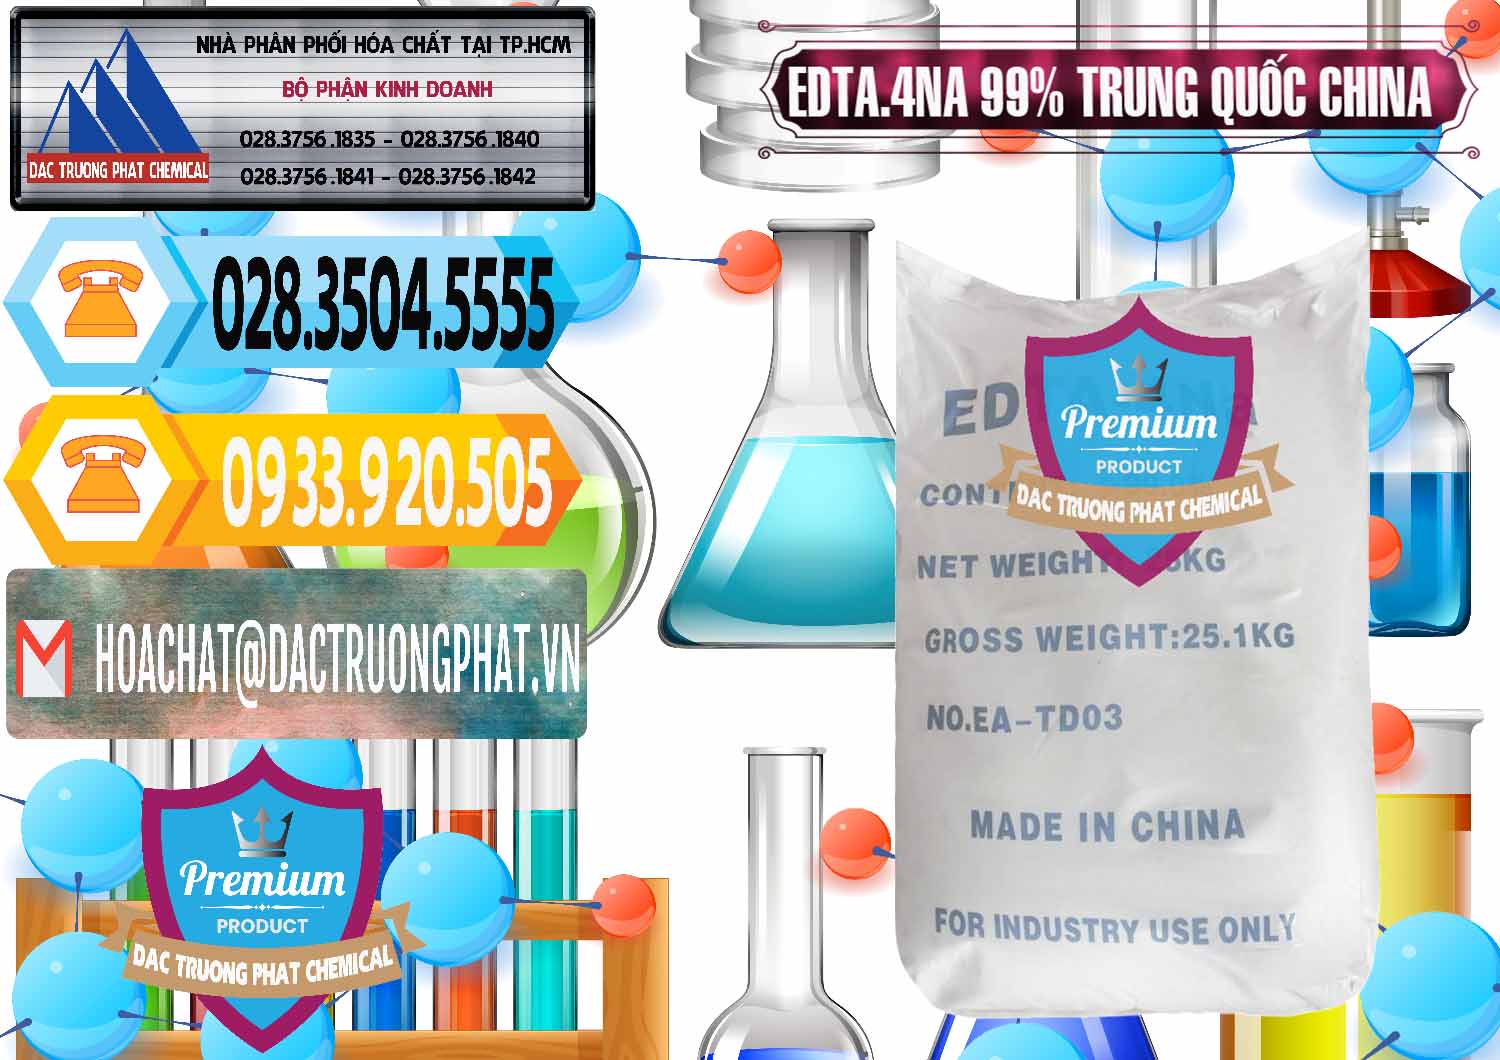 Công ty chuyên bán ( cung cấp ) EDTA.4NA - EDTA Muối 99% Trung Quốc China - 0292 - Công ty cung cấp - phân phối hóa chất tại TP.HCM - hoachattayrua.net